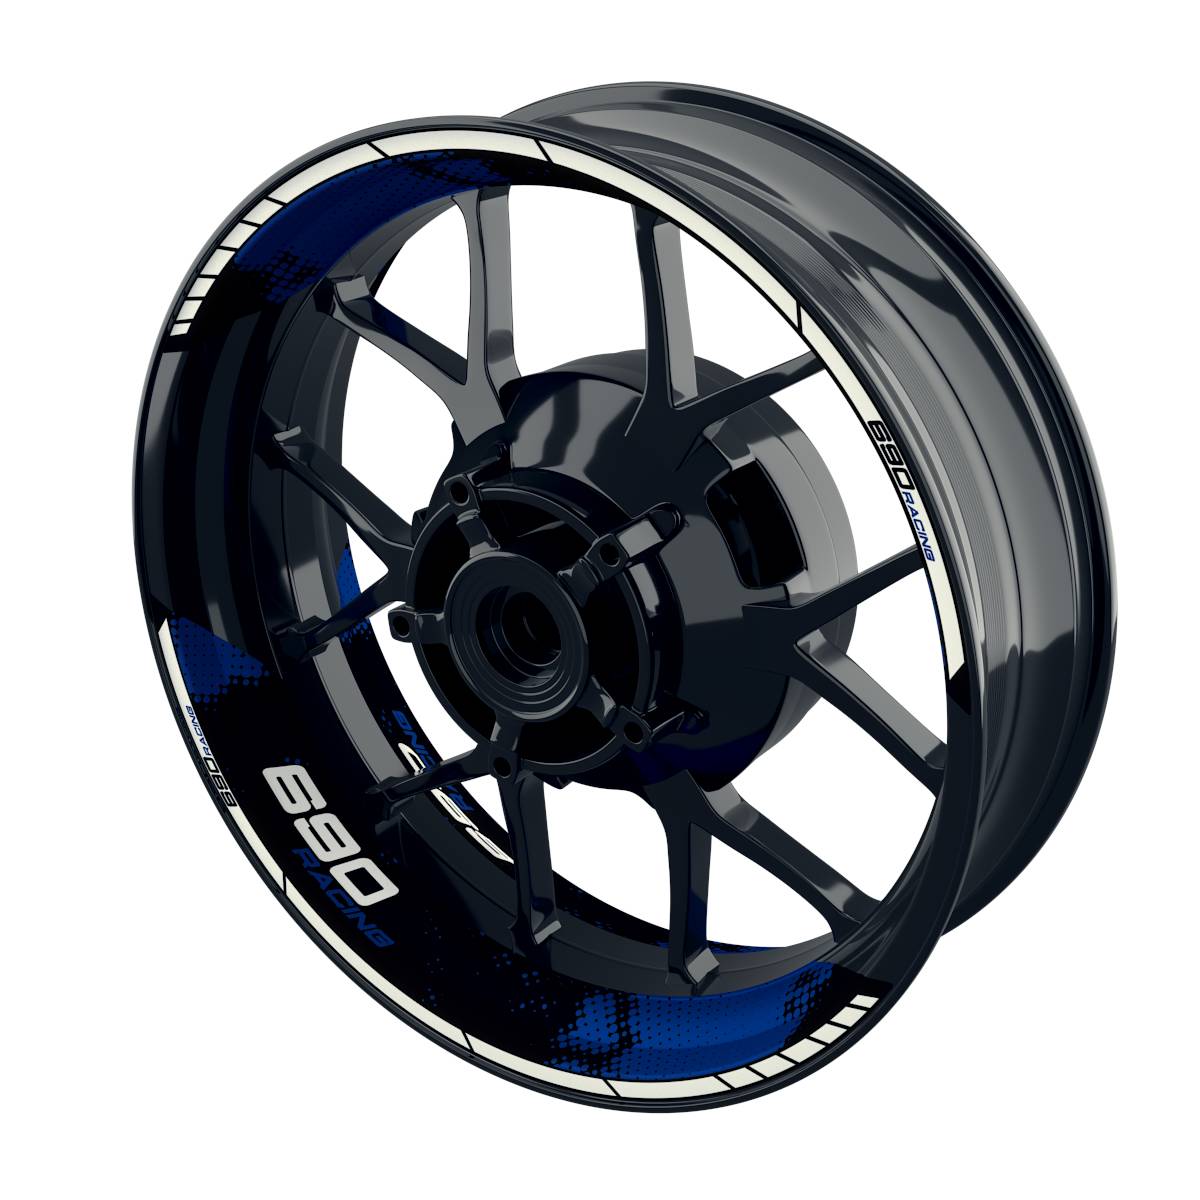 Racing 690 Dots Rim Decals Wheelsticker Premium splitted